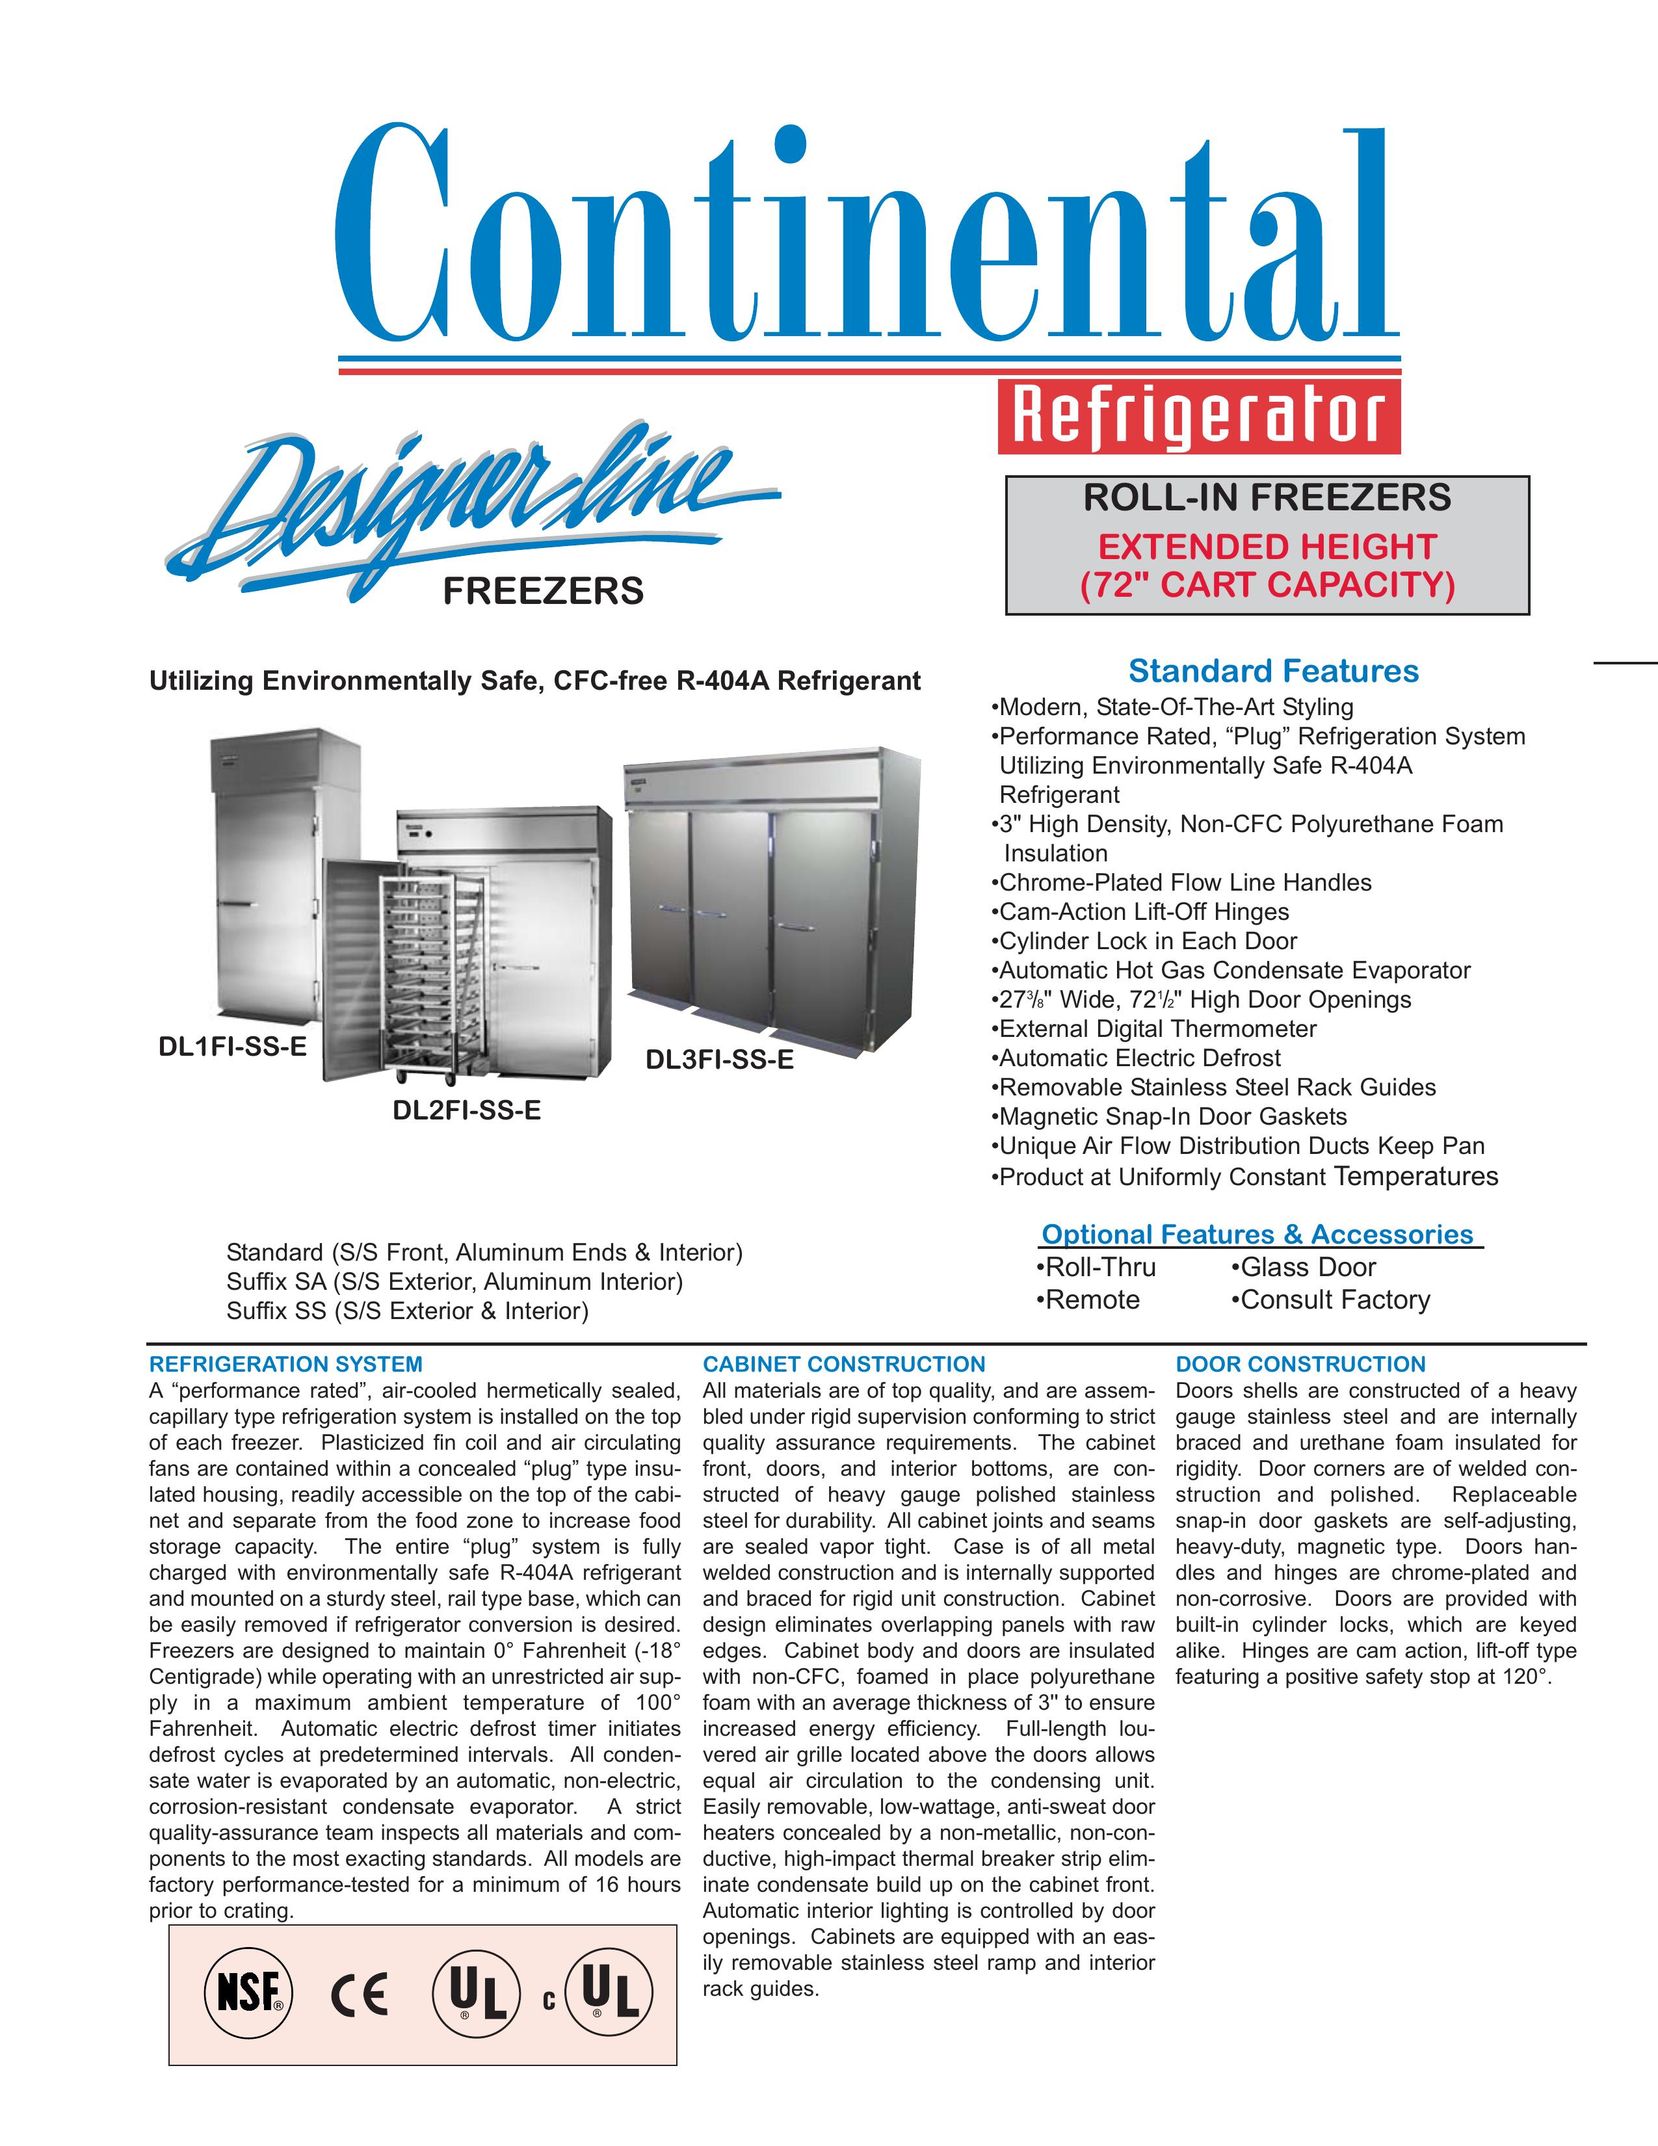 Continental Refrigerator DL3FI-SS-E Freezer User Manual